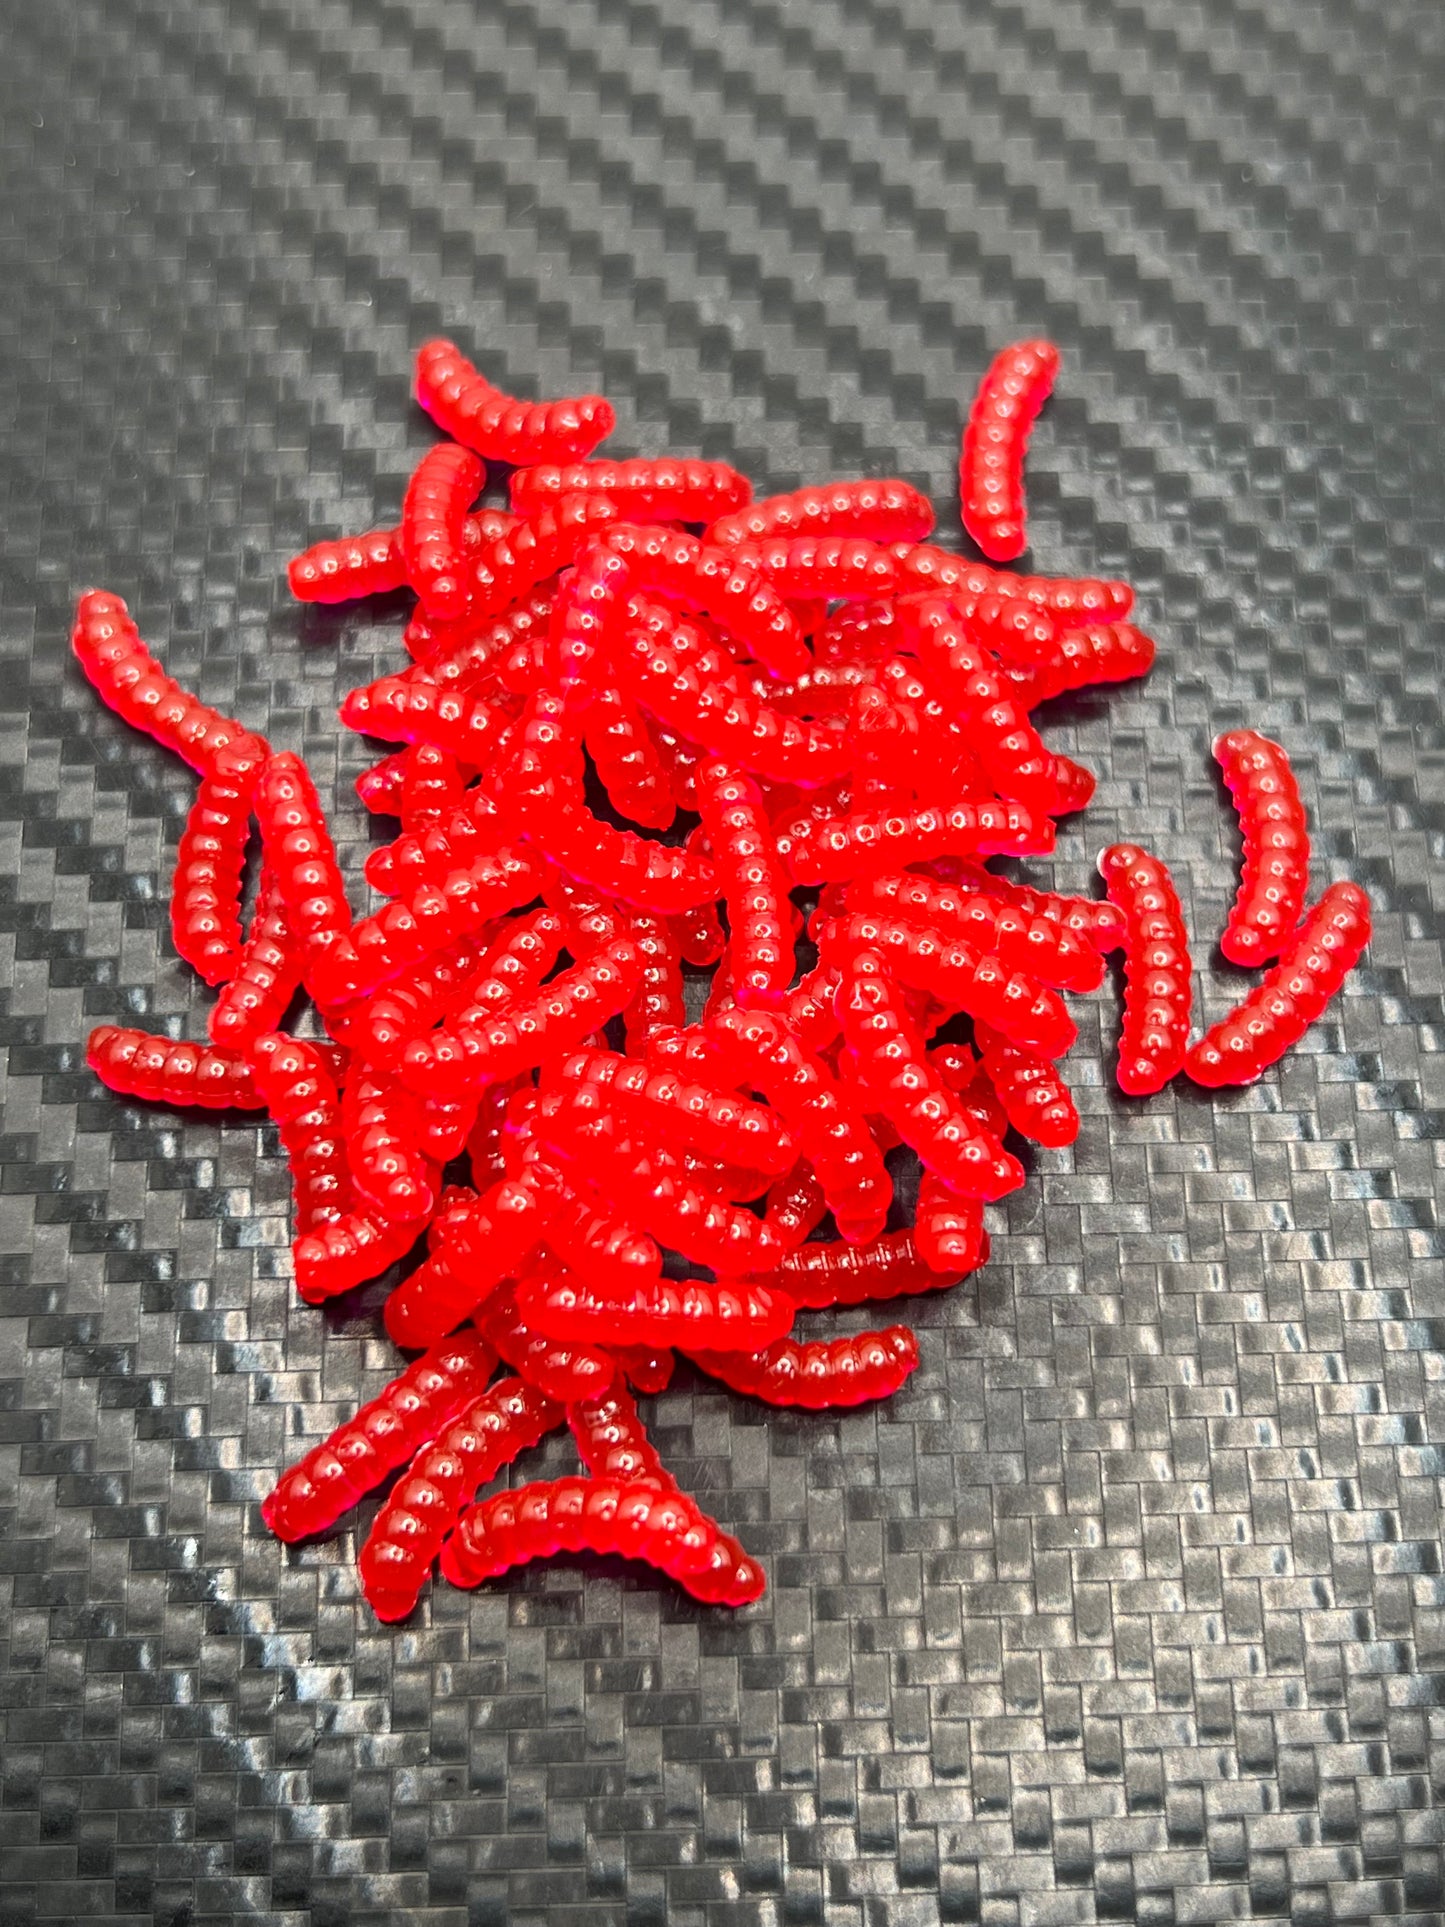 Mini Maggots “Blood Red” (60PK)